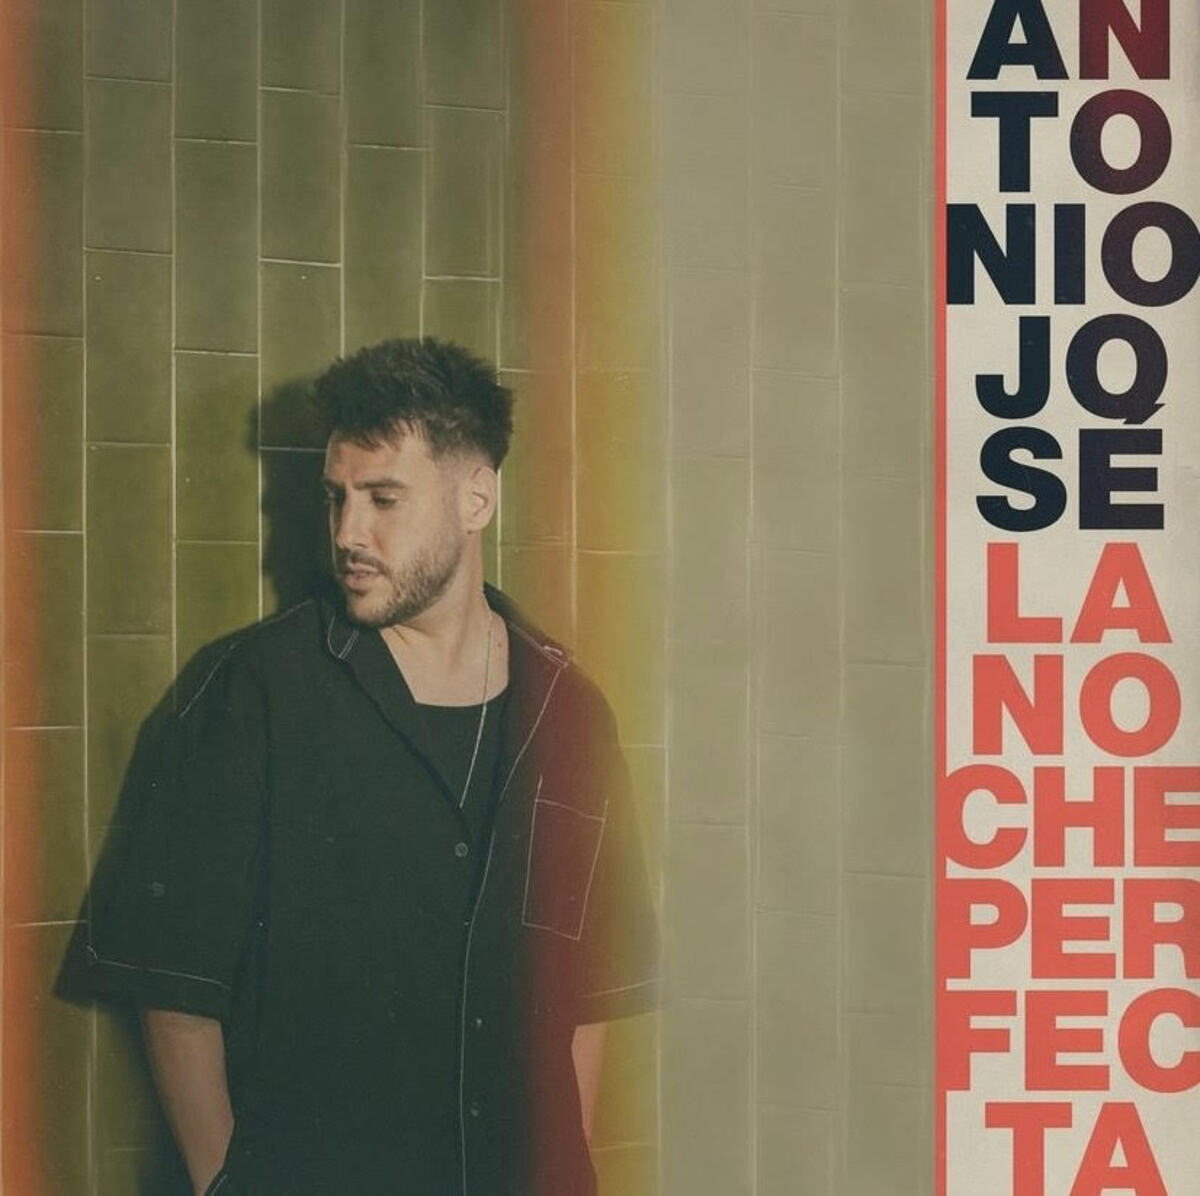 Antonio José lanza su nuevo disco - EL PACTO - Antonio José